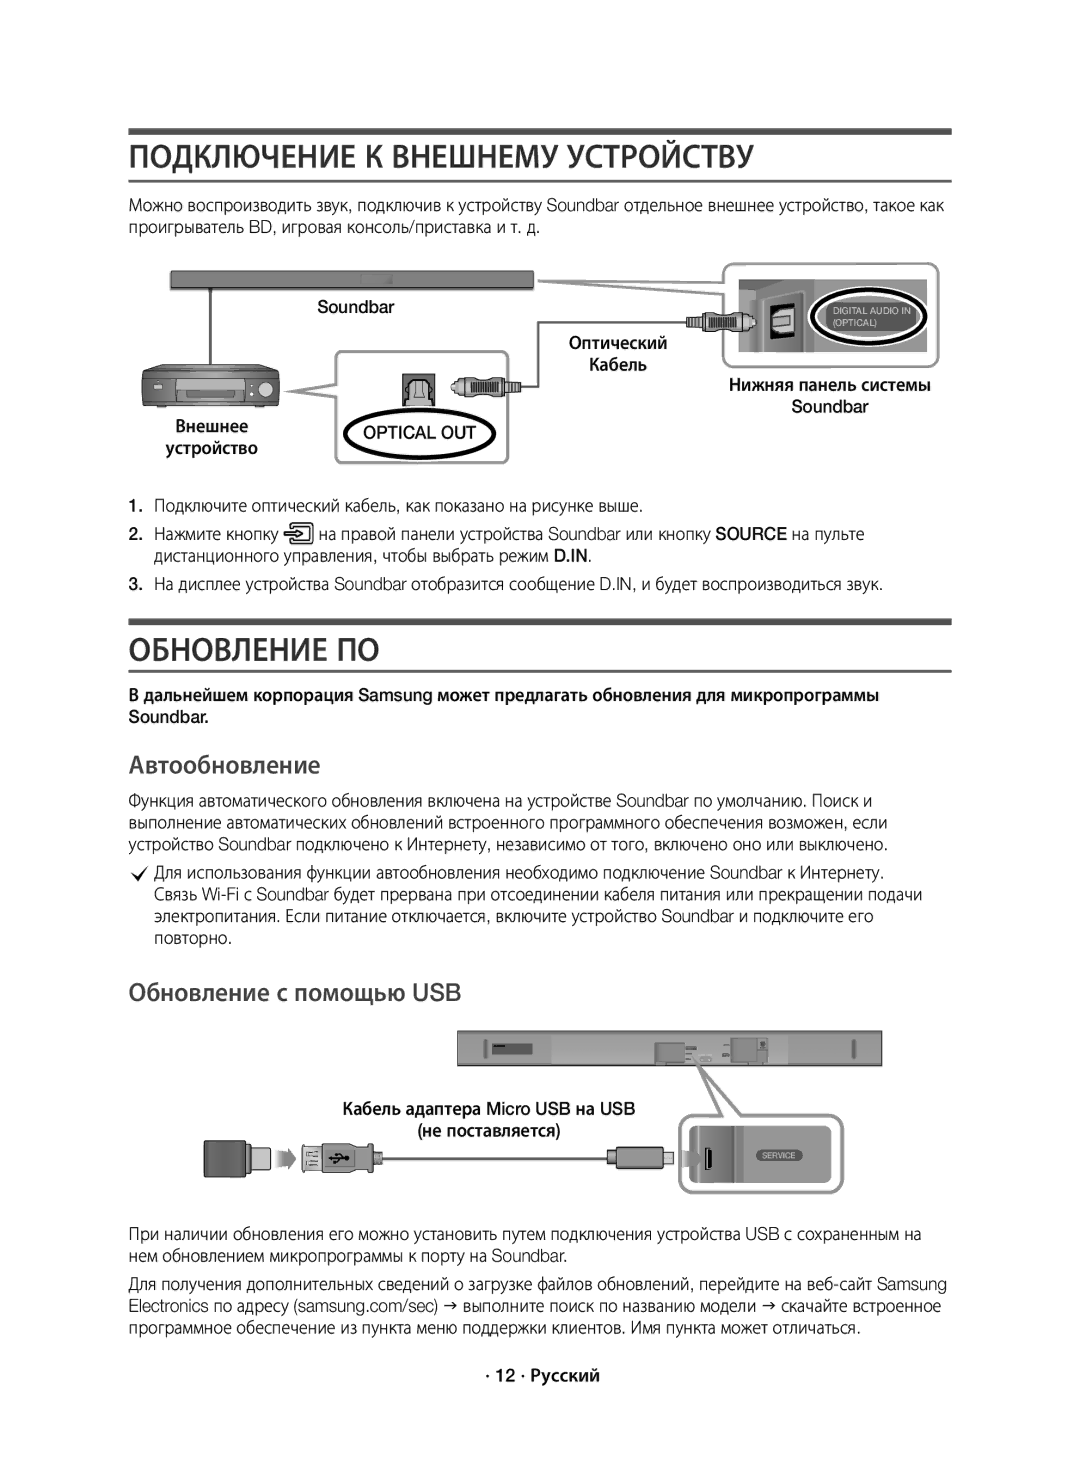 Samsung HW-K650/RU manual Подключение К Внешнему Устройству, Обновление ПО, Автообновление, Обновление с помощью USB 